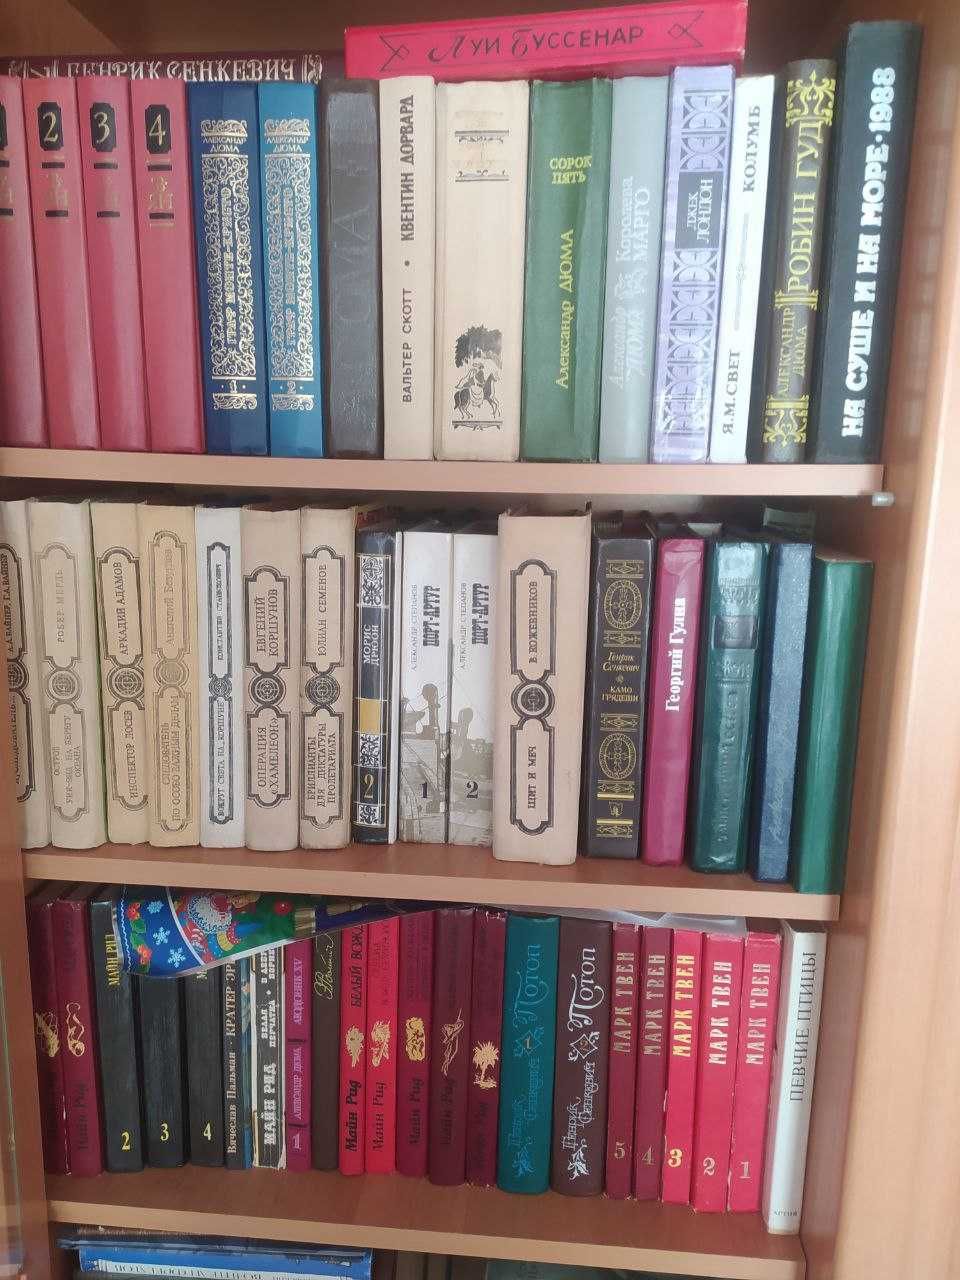 Распродажа семейной библиотеки (книги советской епохи)